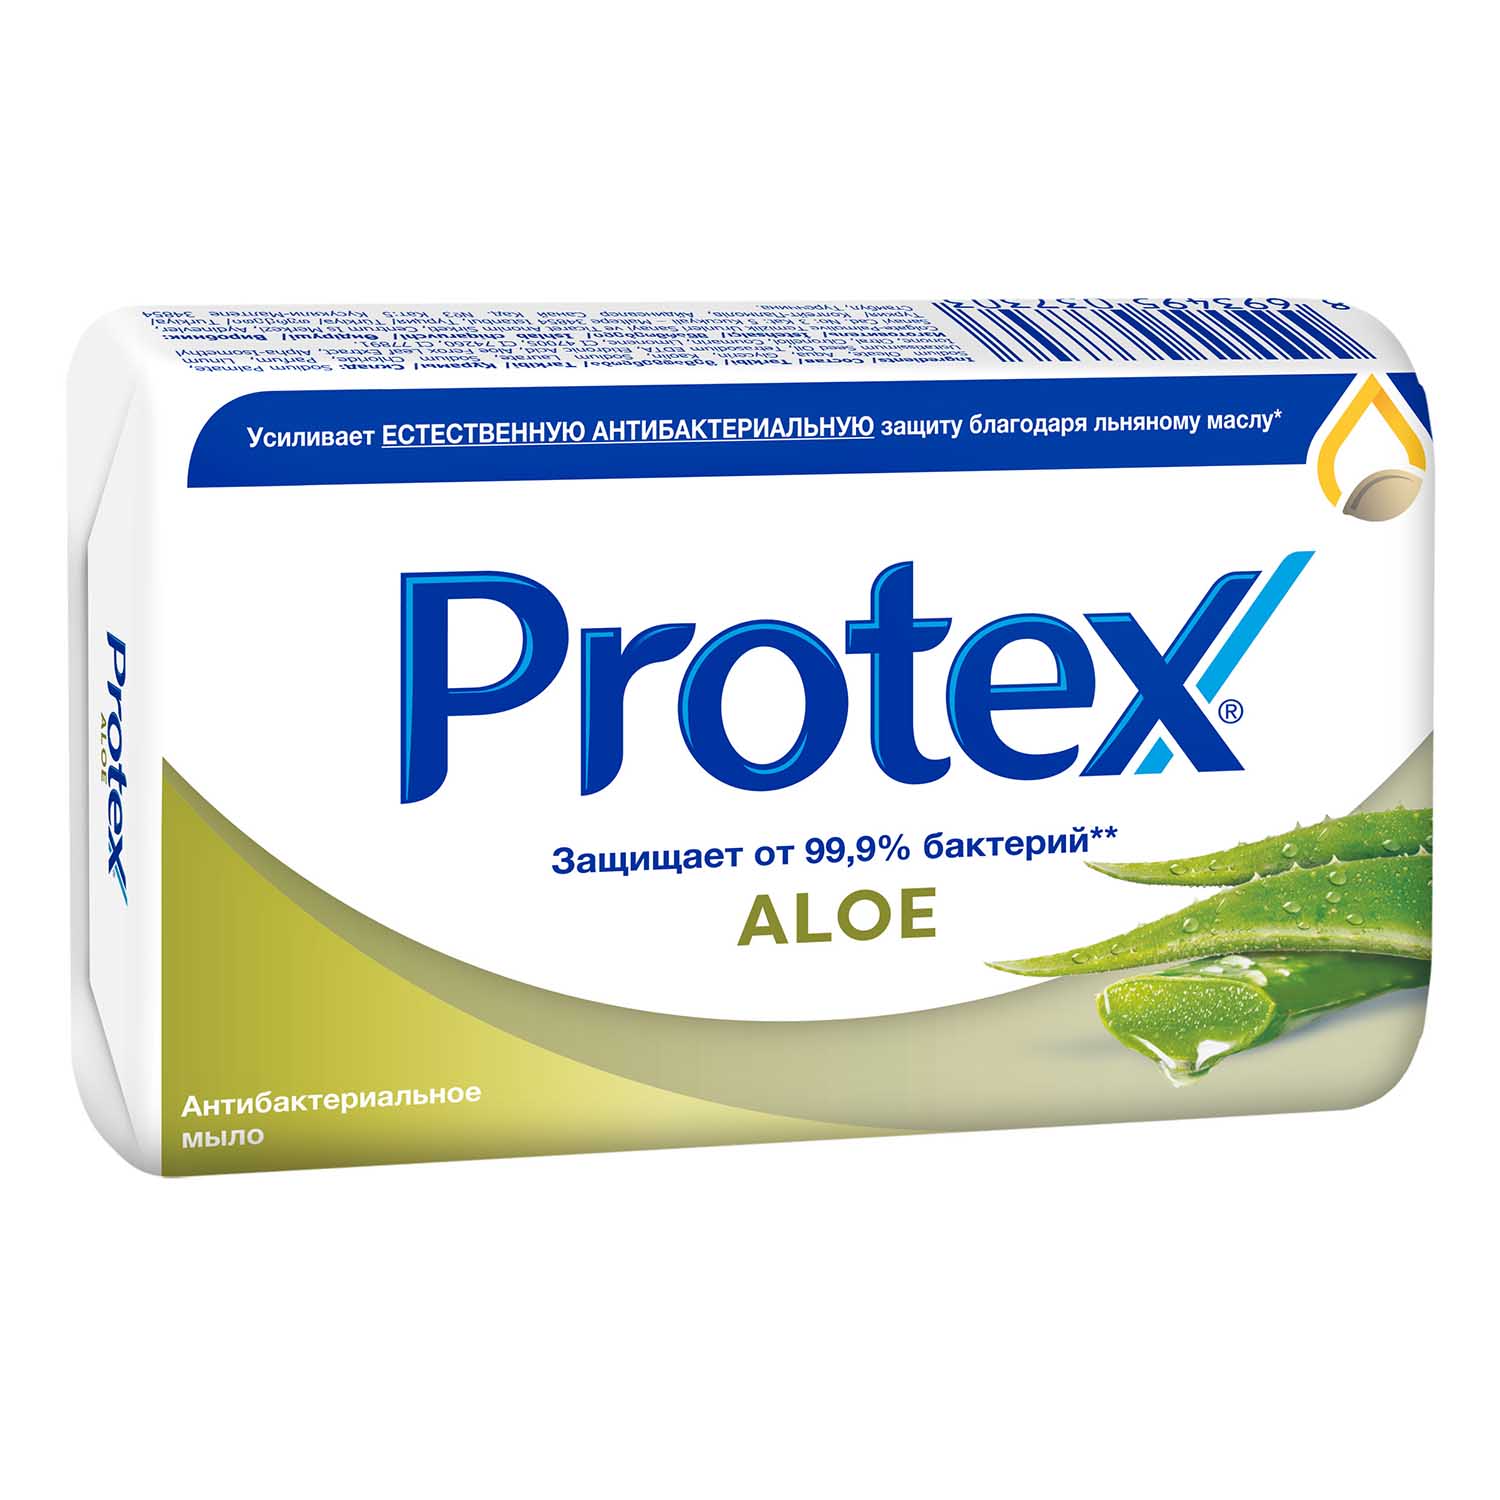 Мыло туалетное Protex Aloe антибактериальное, 90 г мыло protex ultra антибактериальное 90 г